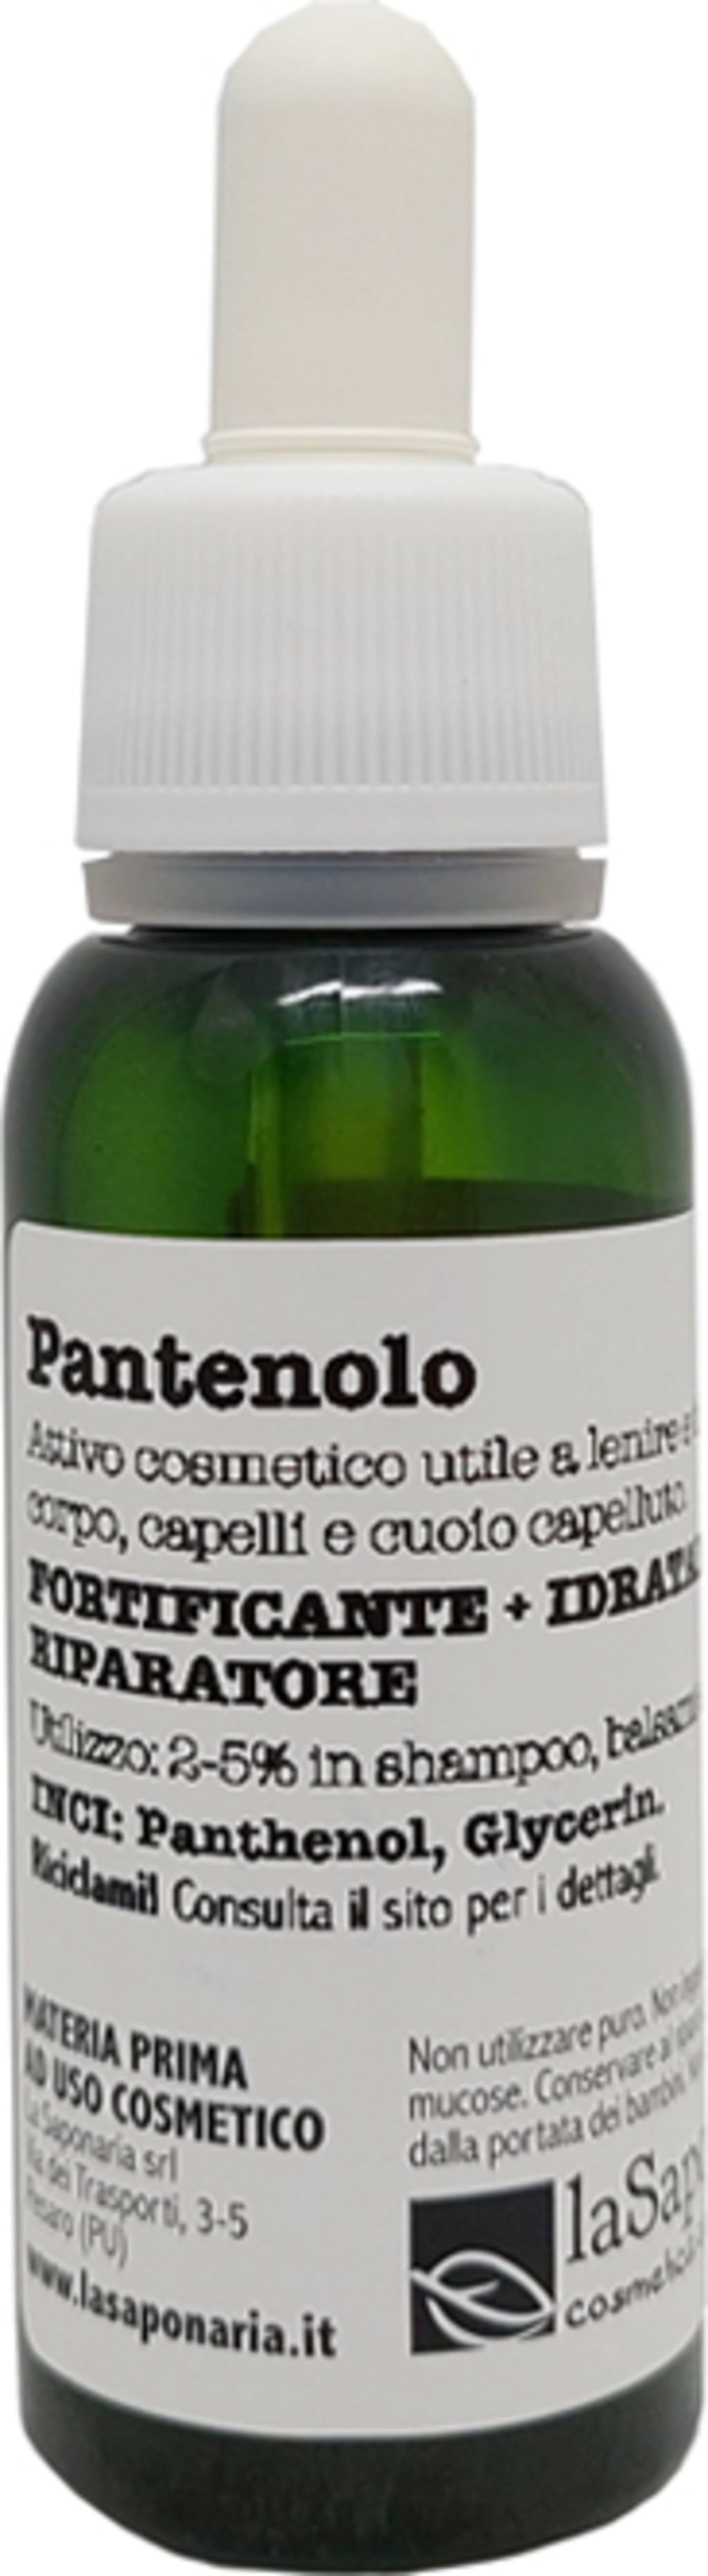 La Saponaria Panthenol - 25 ml